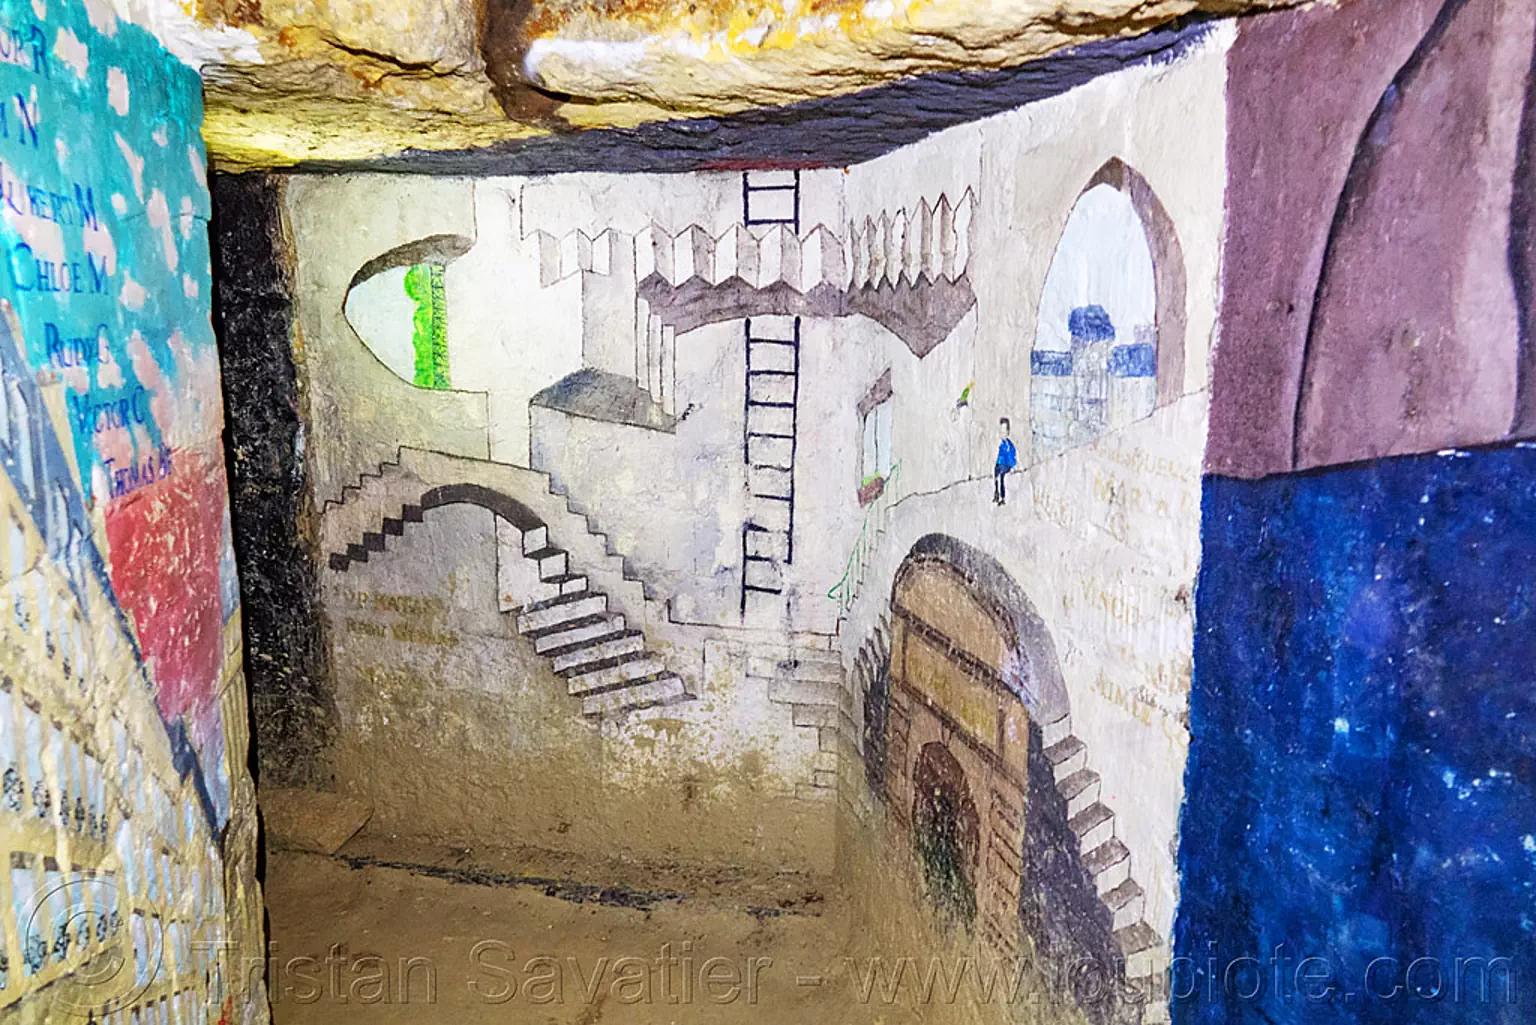 M.C. escher stairs - fresques de baptême des promotions de l'École des mines de paris - catacombes de paris - catacombs of paris (off-limit area), cave, clandestines, ecole des mines, illegal, m.c. escher, paris, trespassing, underground quarry